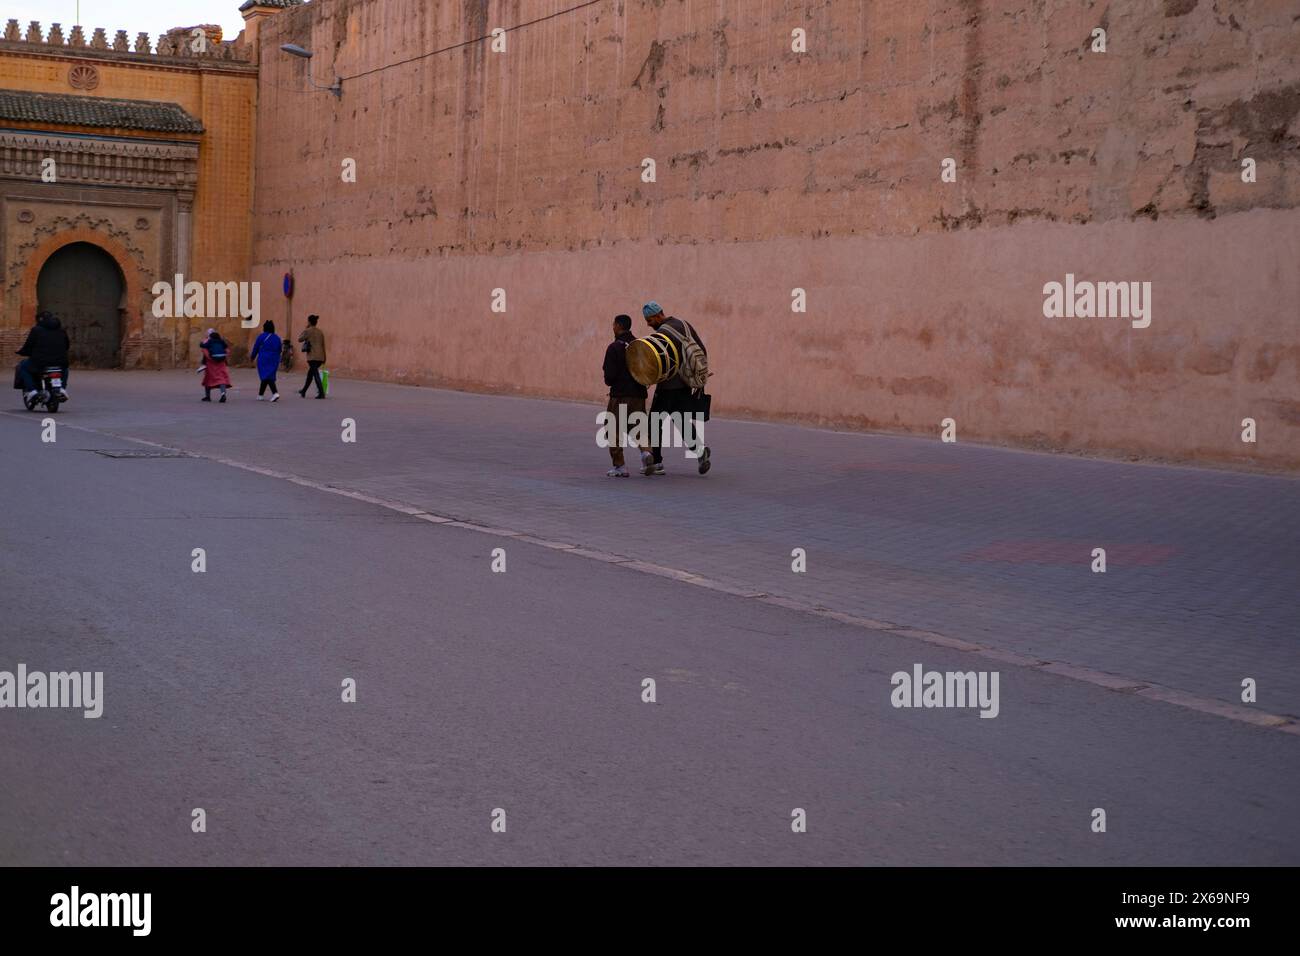 Les gens marchent le long du haut mur Red City Marrakech se pressent sur les affaires, le paysage urbain africain authentique, les activités quotidiennes et les interactions que les gens vivent Banque D'Images